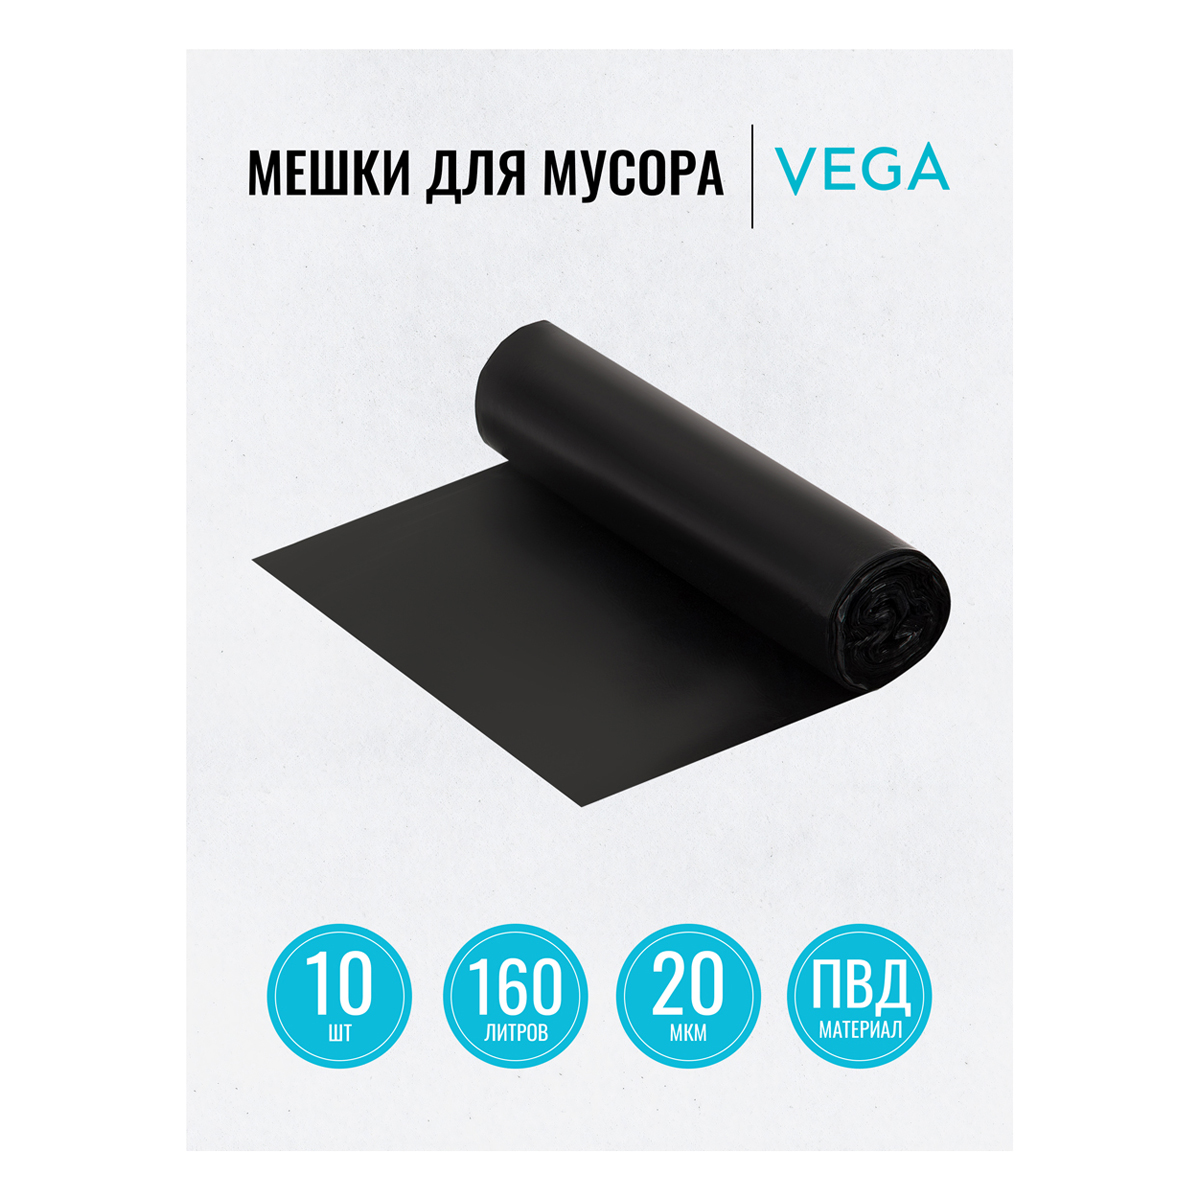 Мешки для мусора 160л Vega ПВД, 80*106см, 20мкм, 10шт., черные, в рулоне